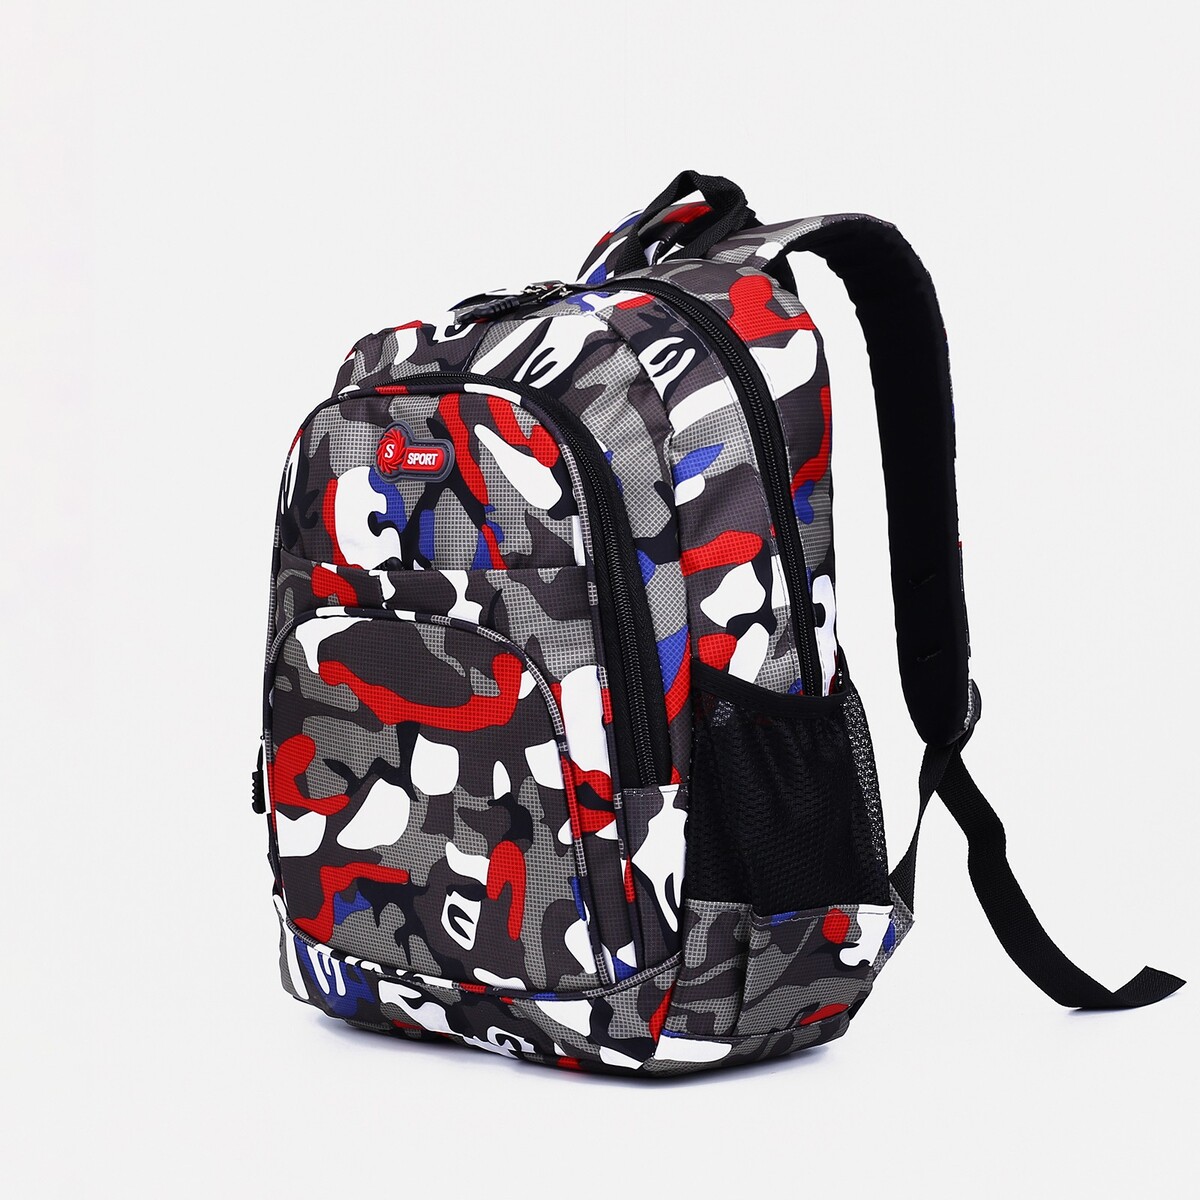 Рюкзак школьный из текстиля 2 отдела на молнии, наружный карман, цвет серый/красный рюкзак hike pack 22 красный